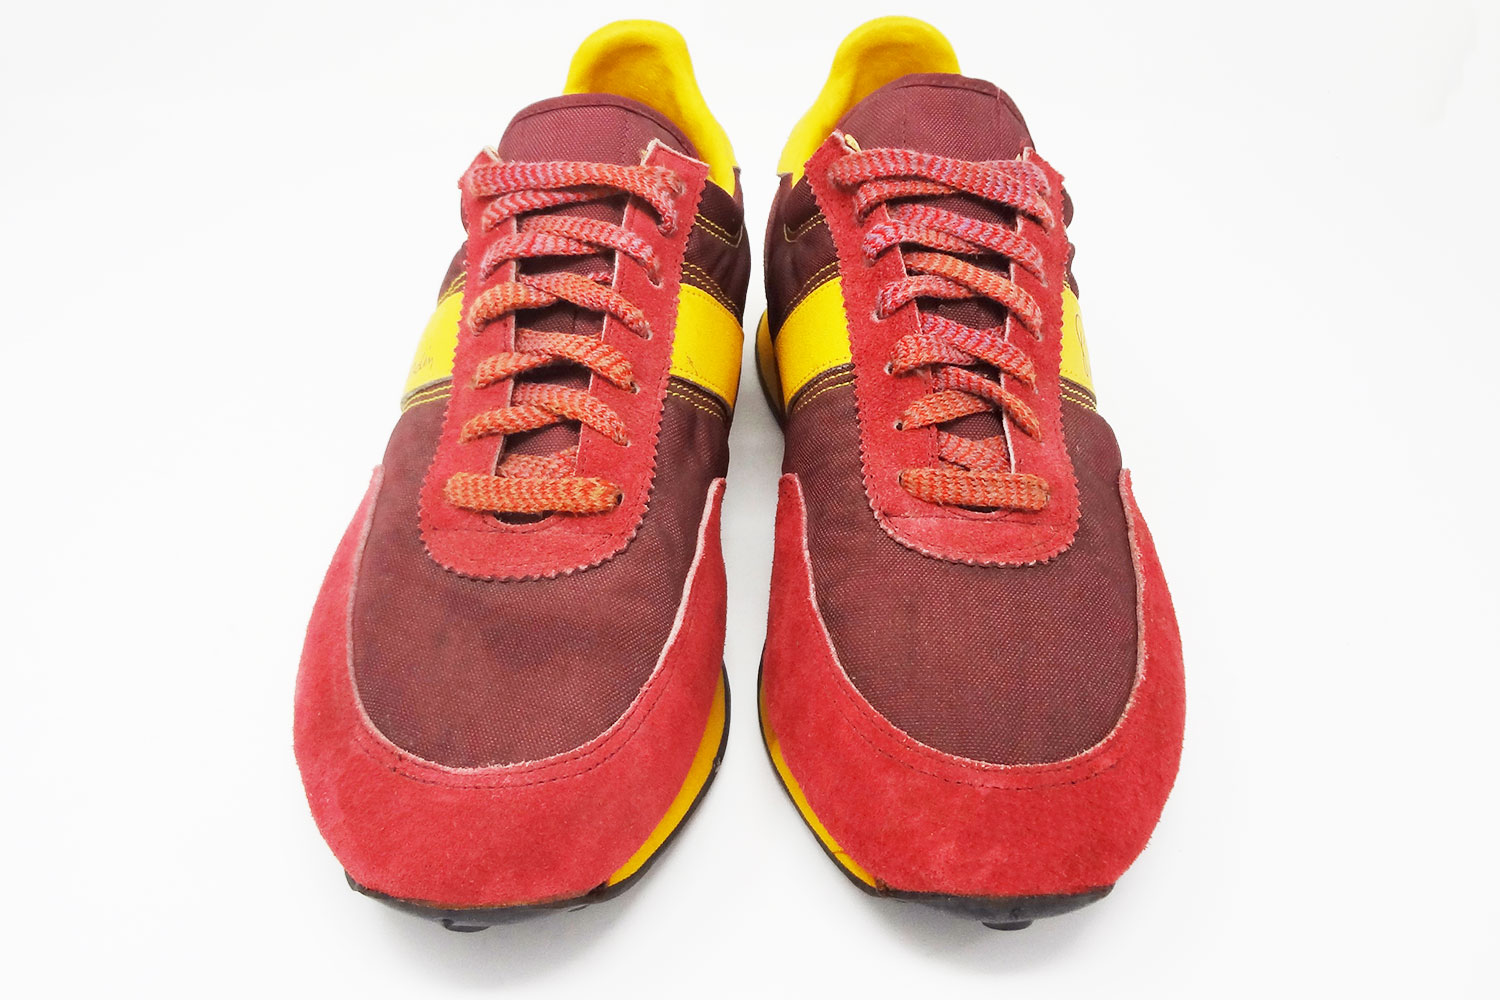 Obscure 1980s Pierre Cardin vintage sneakers @ The Deffest